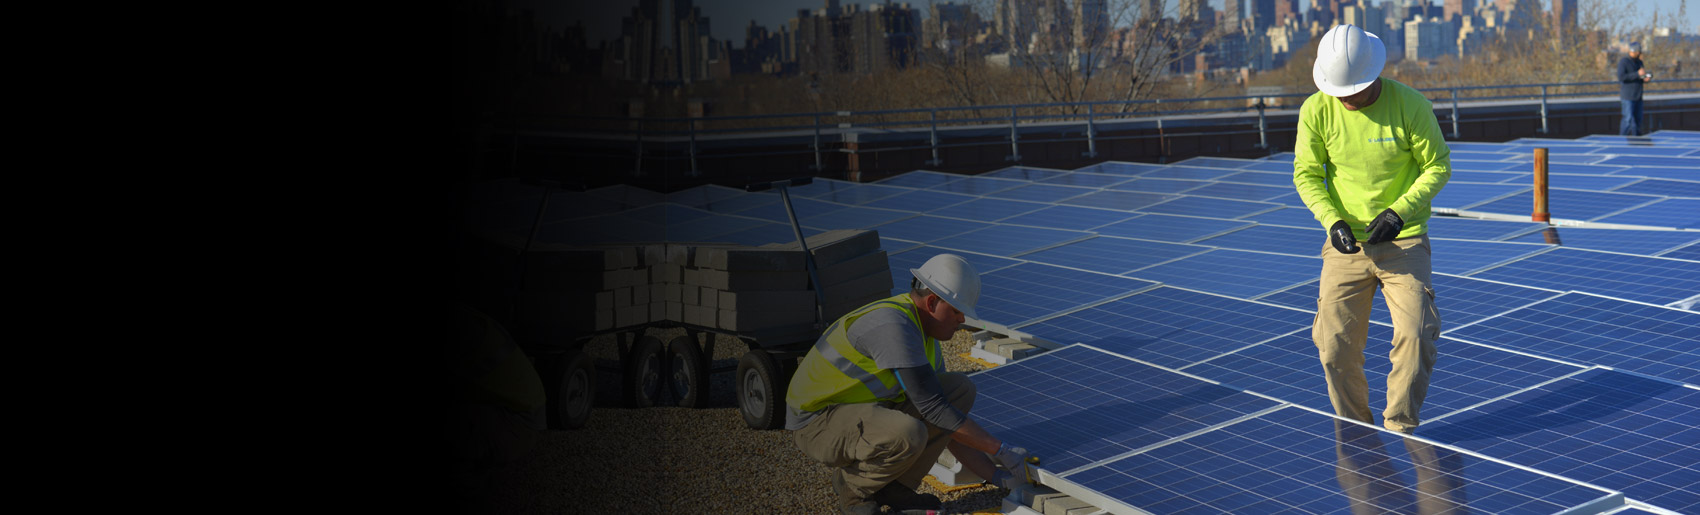 Instalación de paneles solares en un tejado de Nueva York